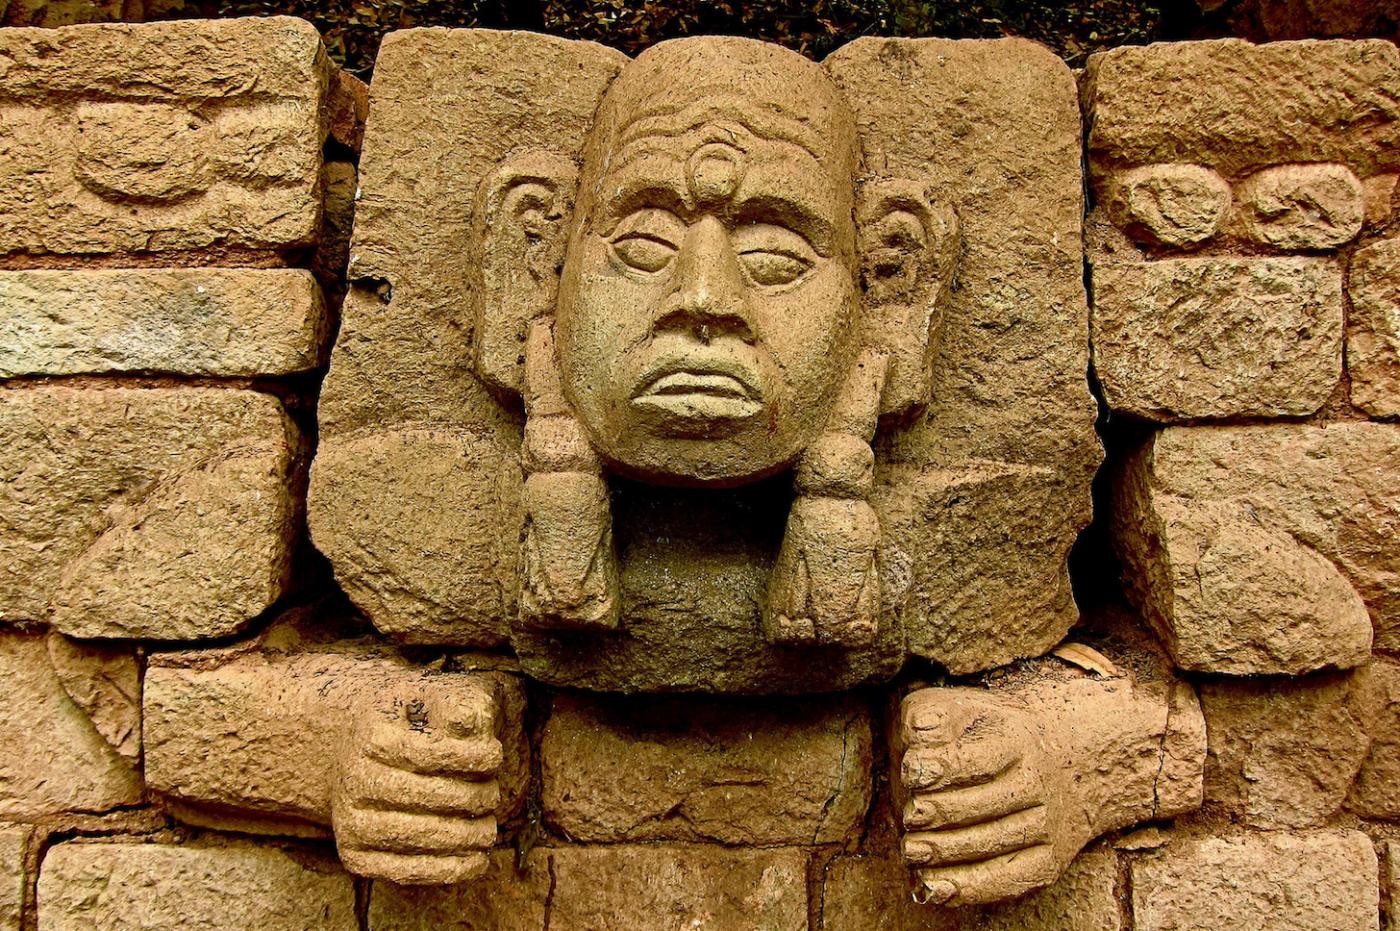 Mayan ruins in Copan, Honduras.